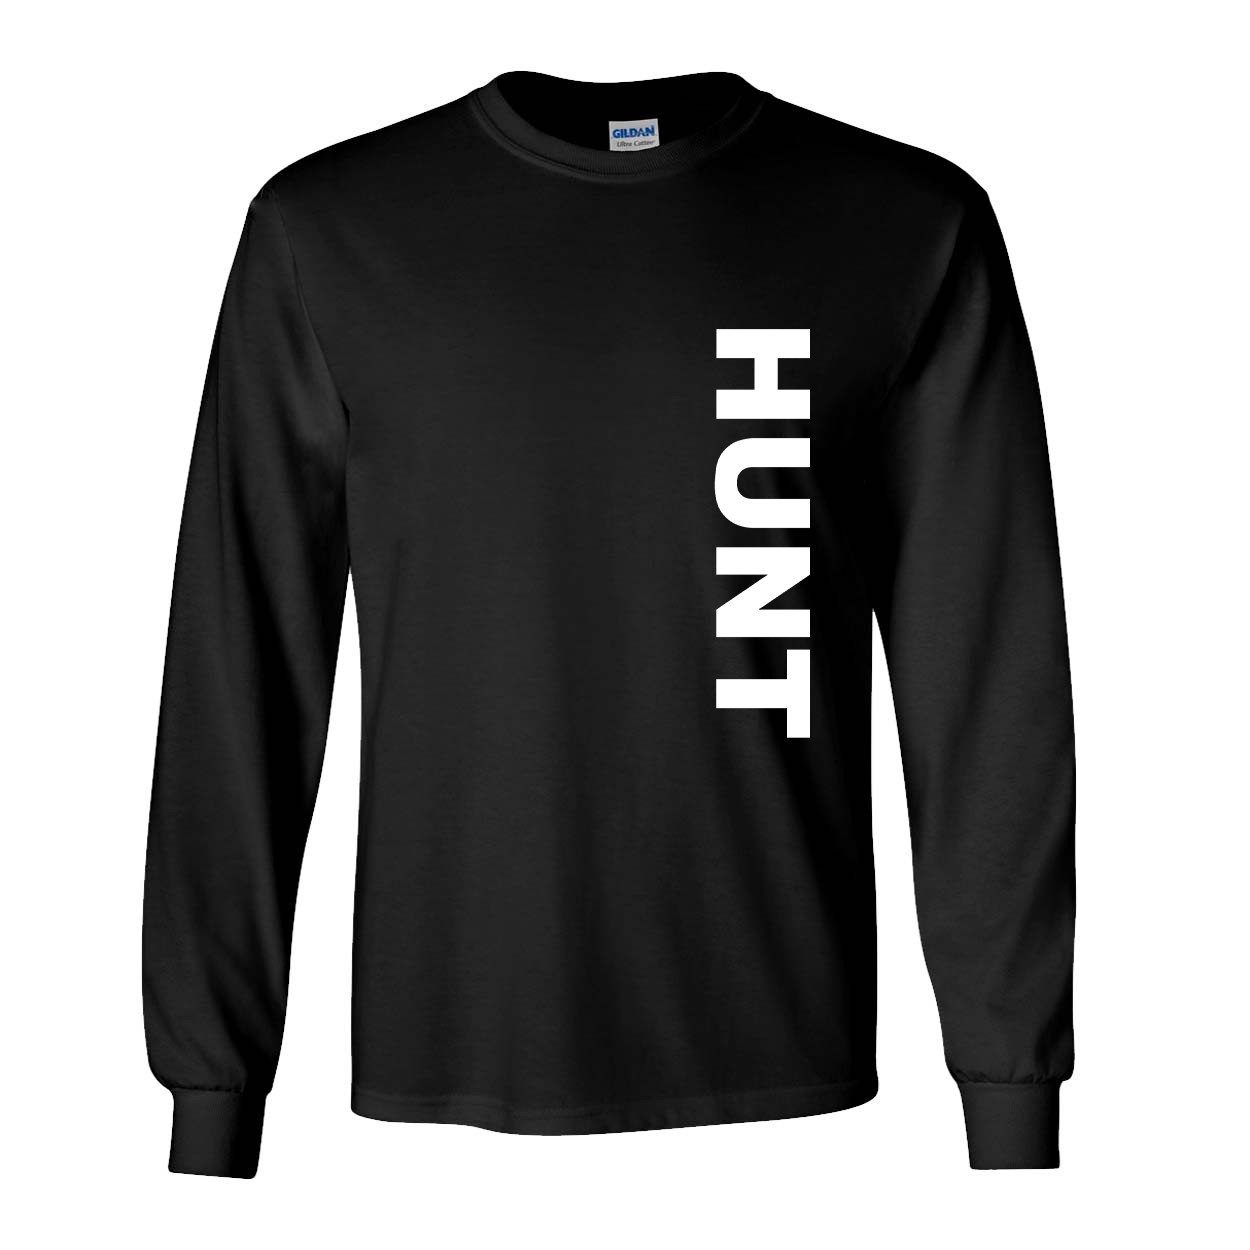 Hunt Brand Logo Classic Vertical Long Sleeve T-Shirt Black (White Logo)